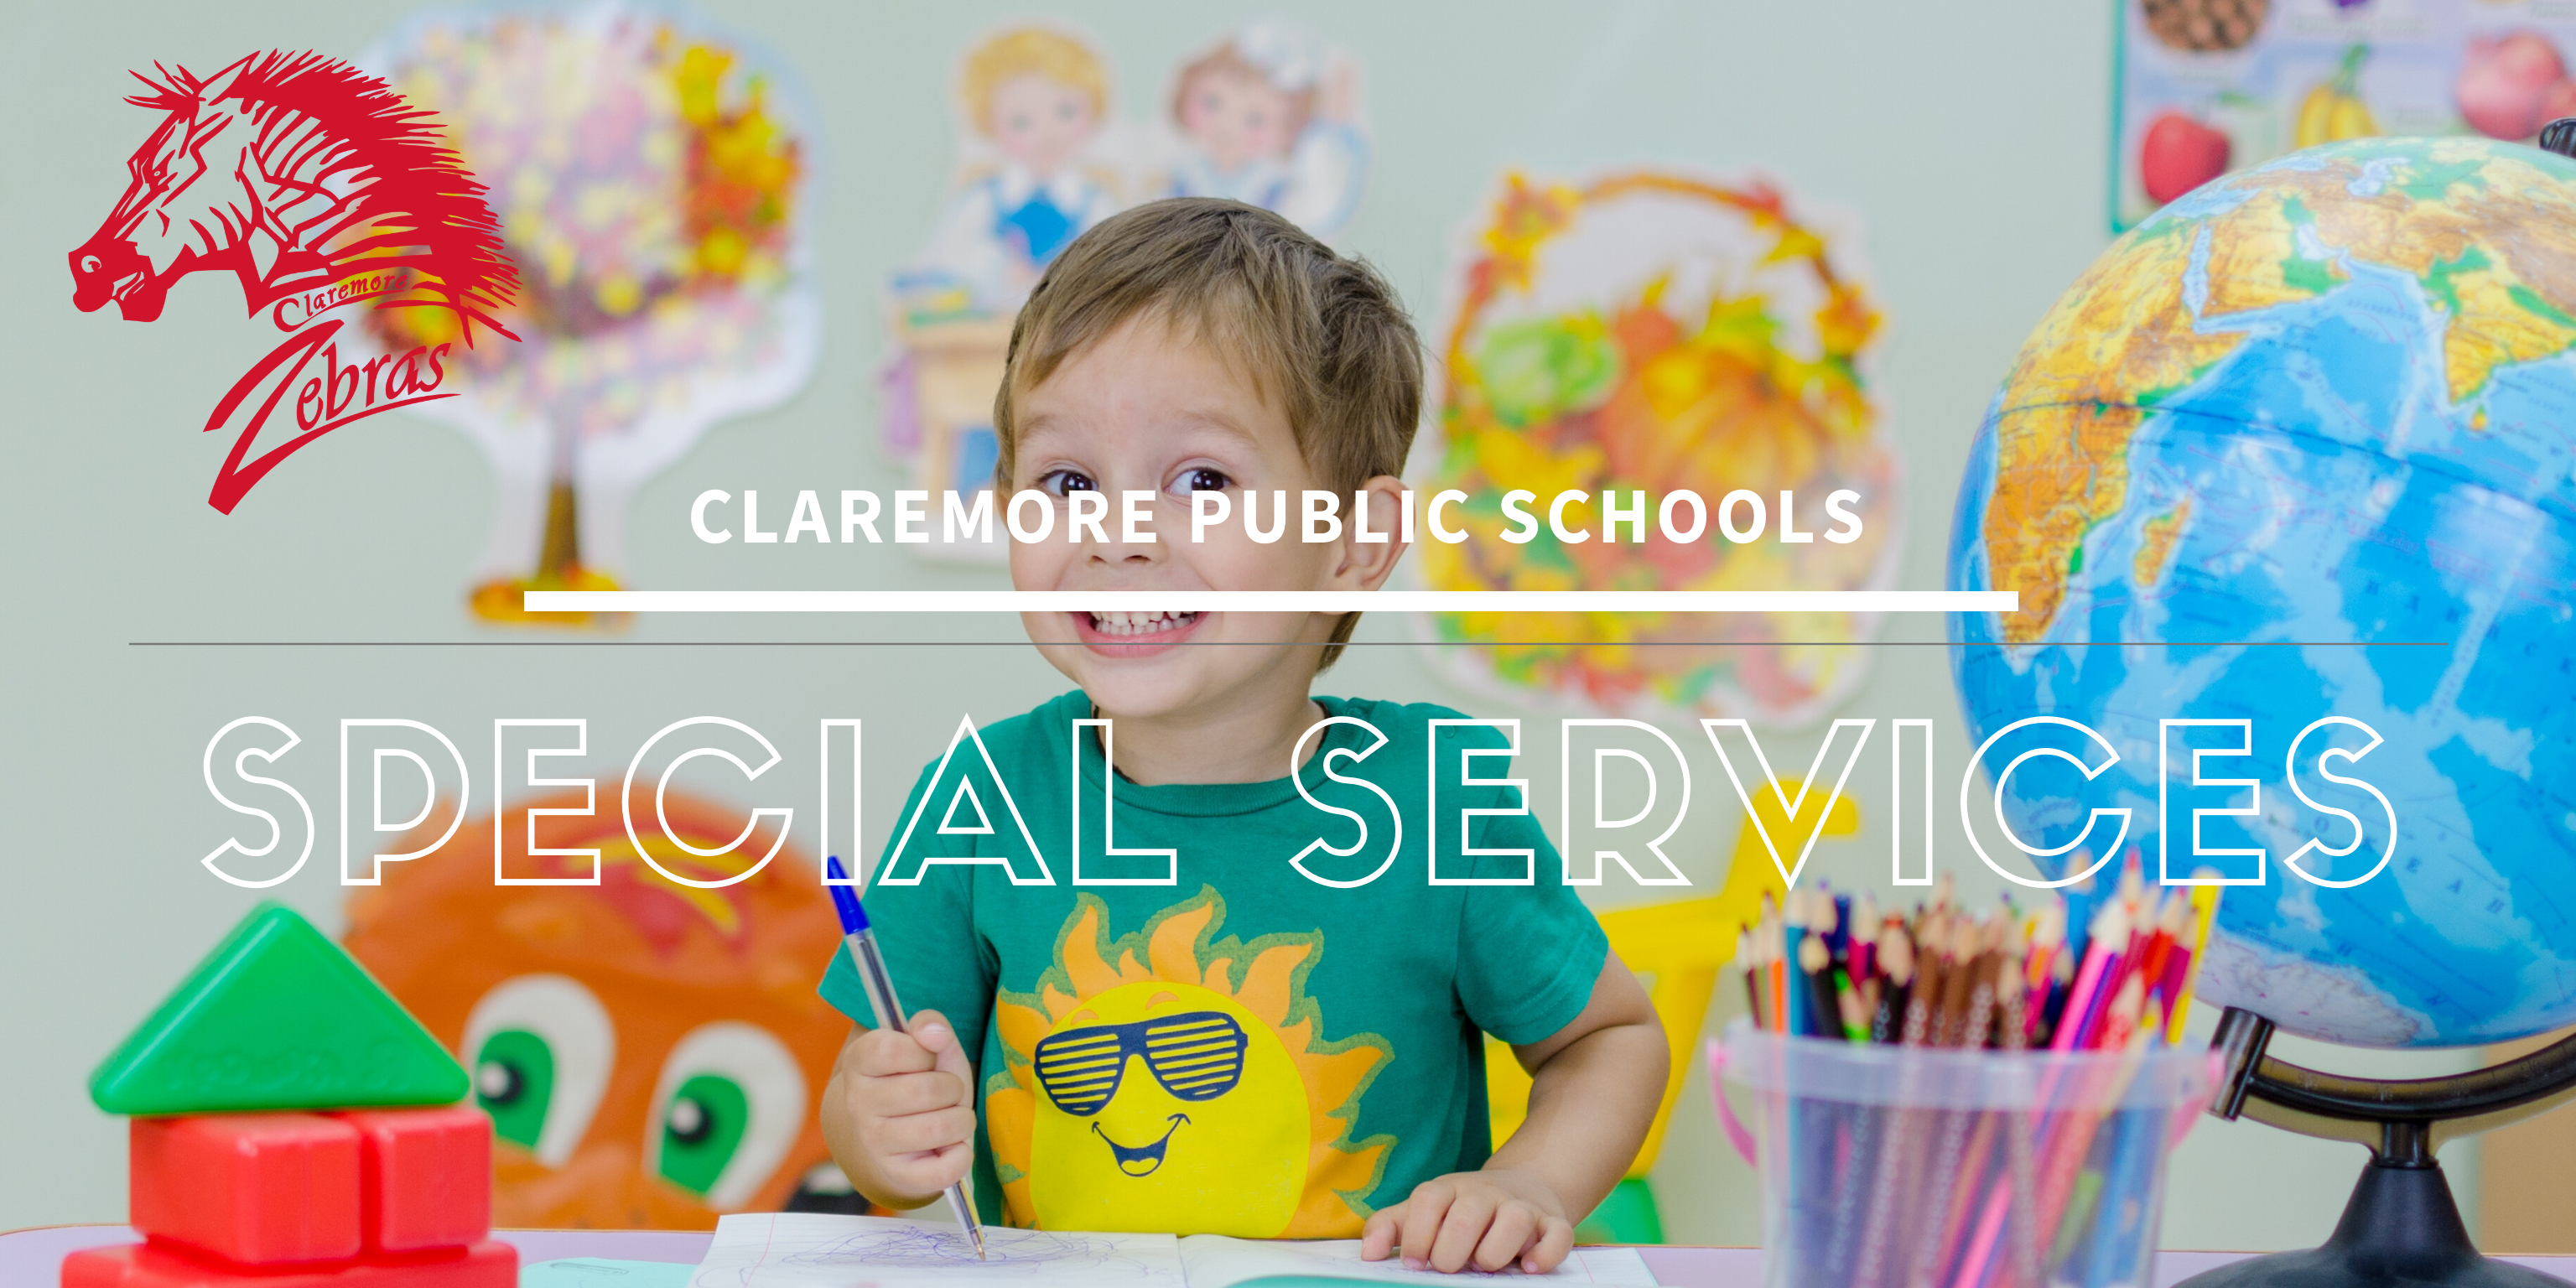 claremore public schools special services banner